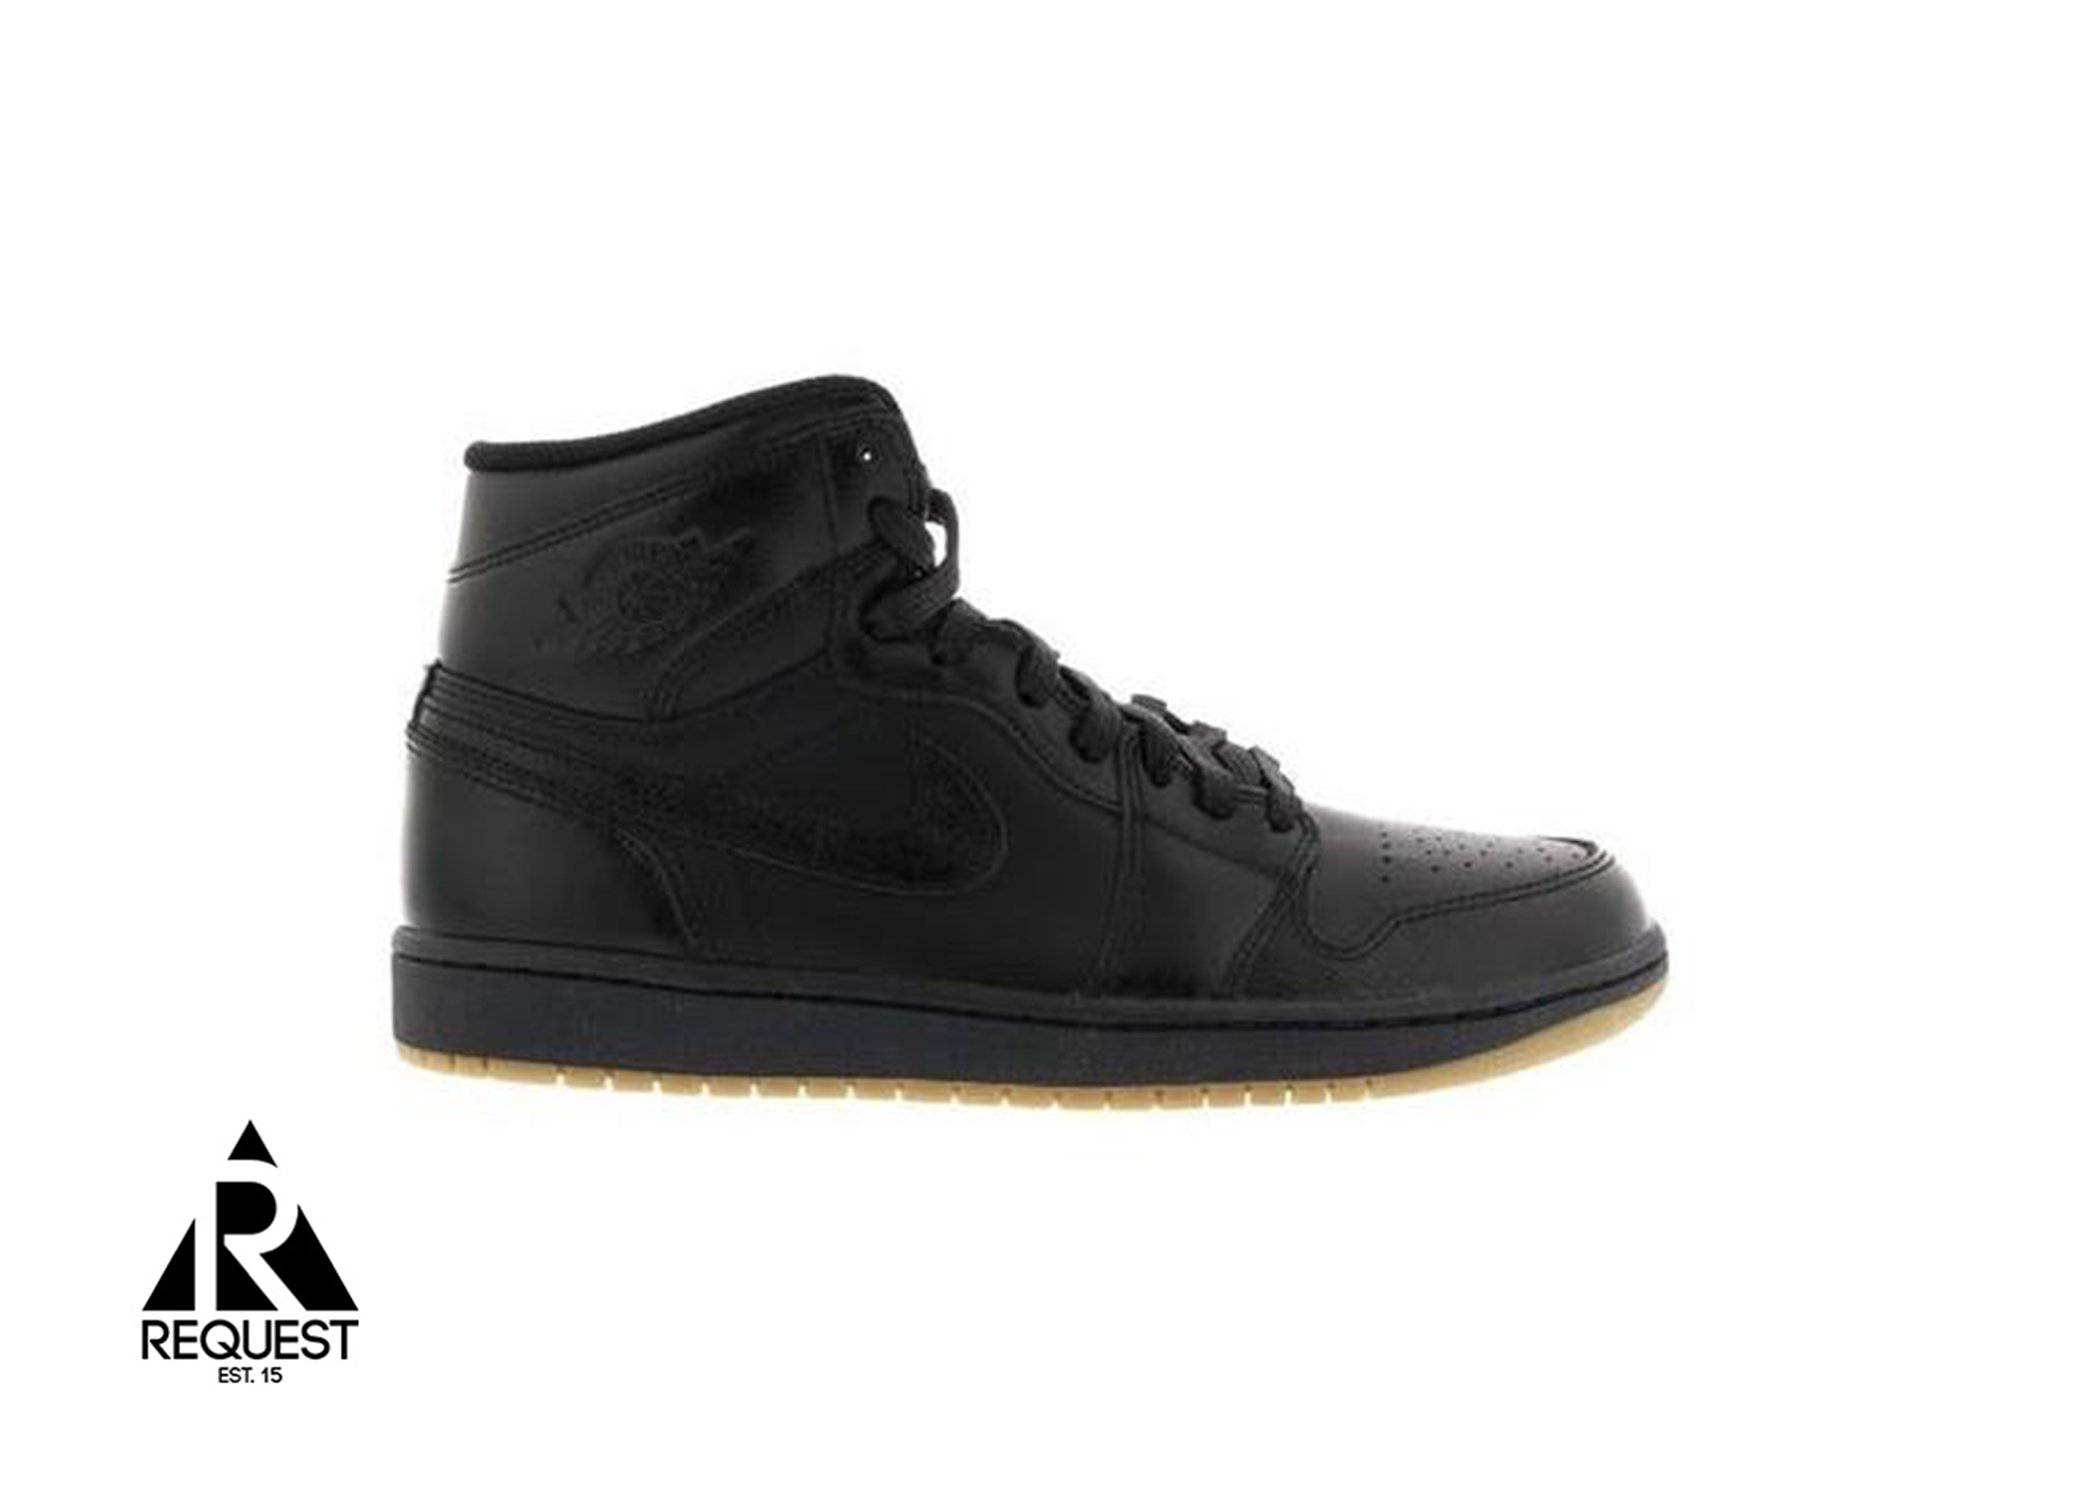 Air Jordan 1 Retro “Black Gum”